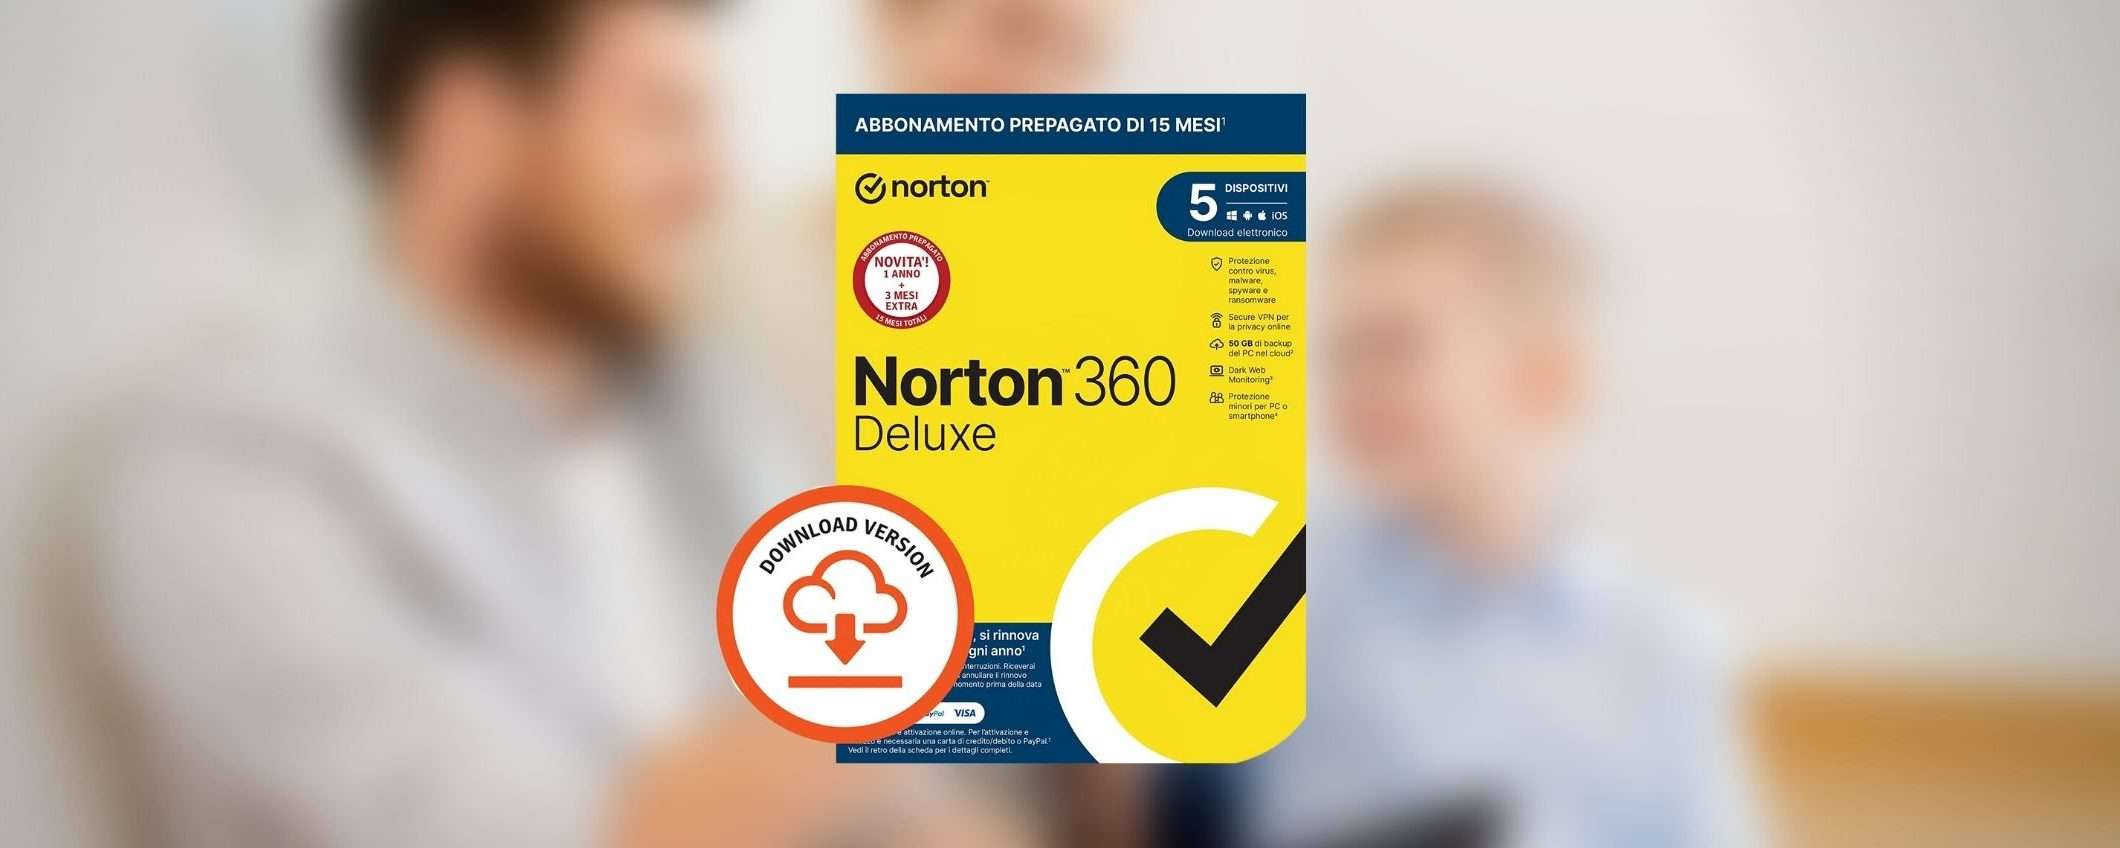 Norton 360 Deluxe 2023 in offerta Amazon: solo 18 euro per 5 dispositivi